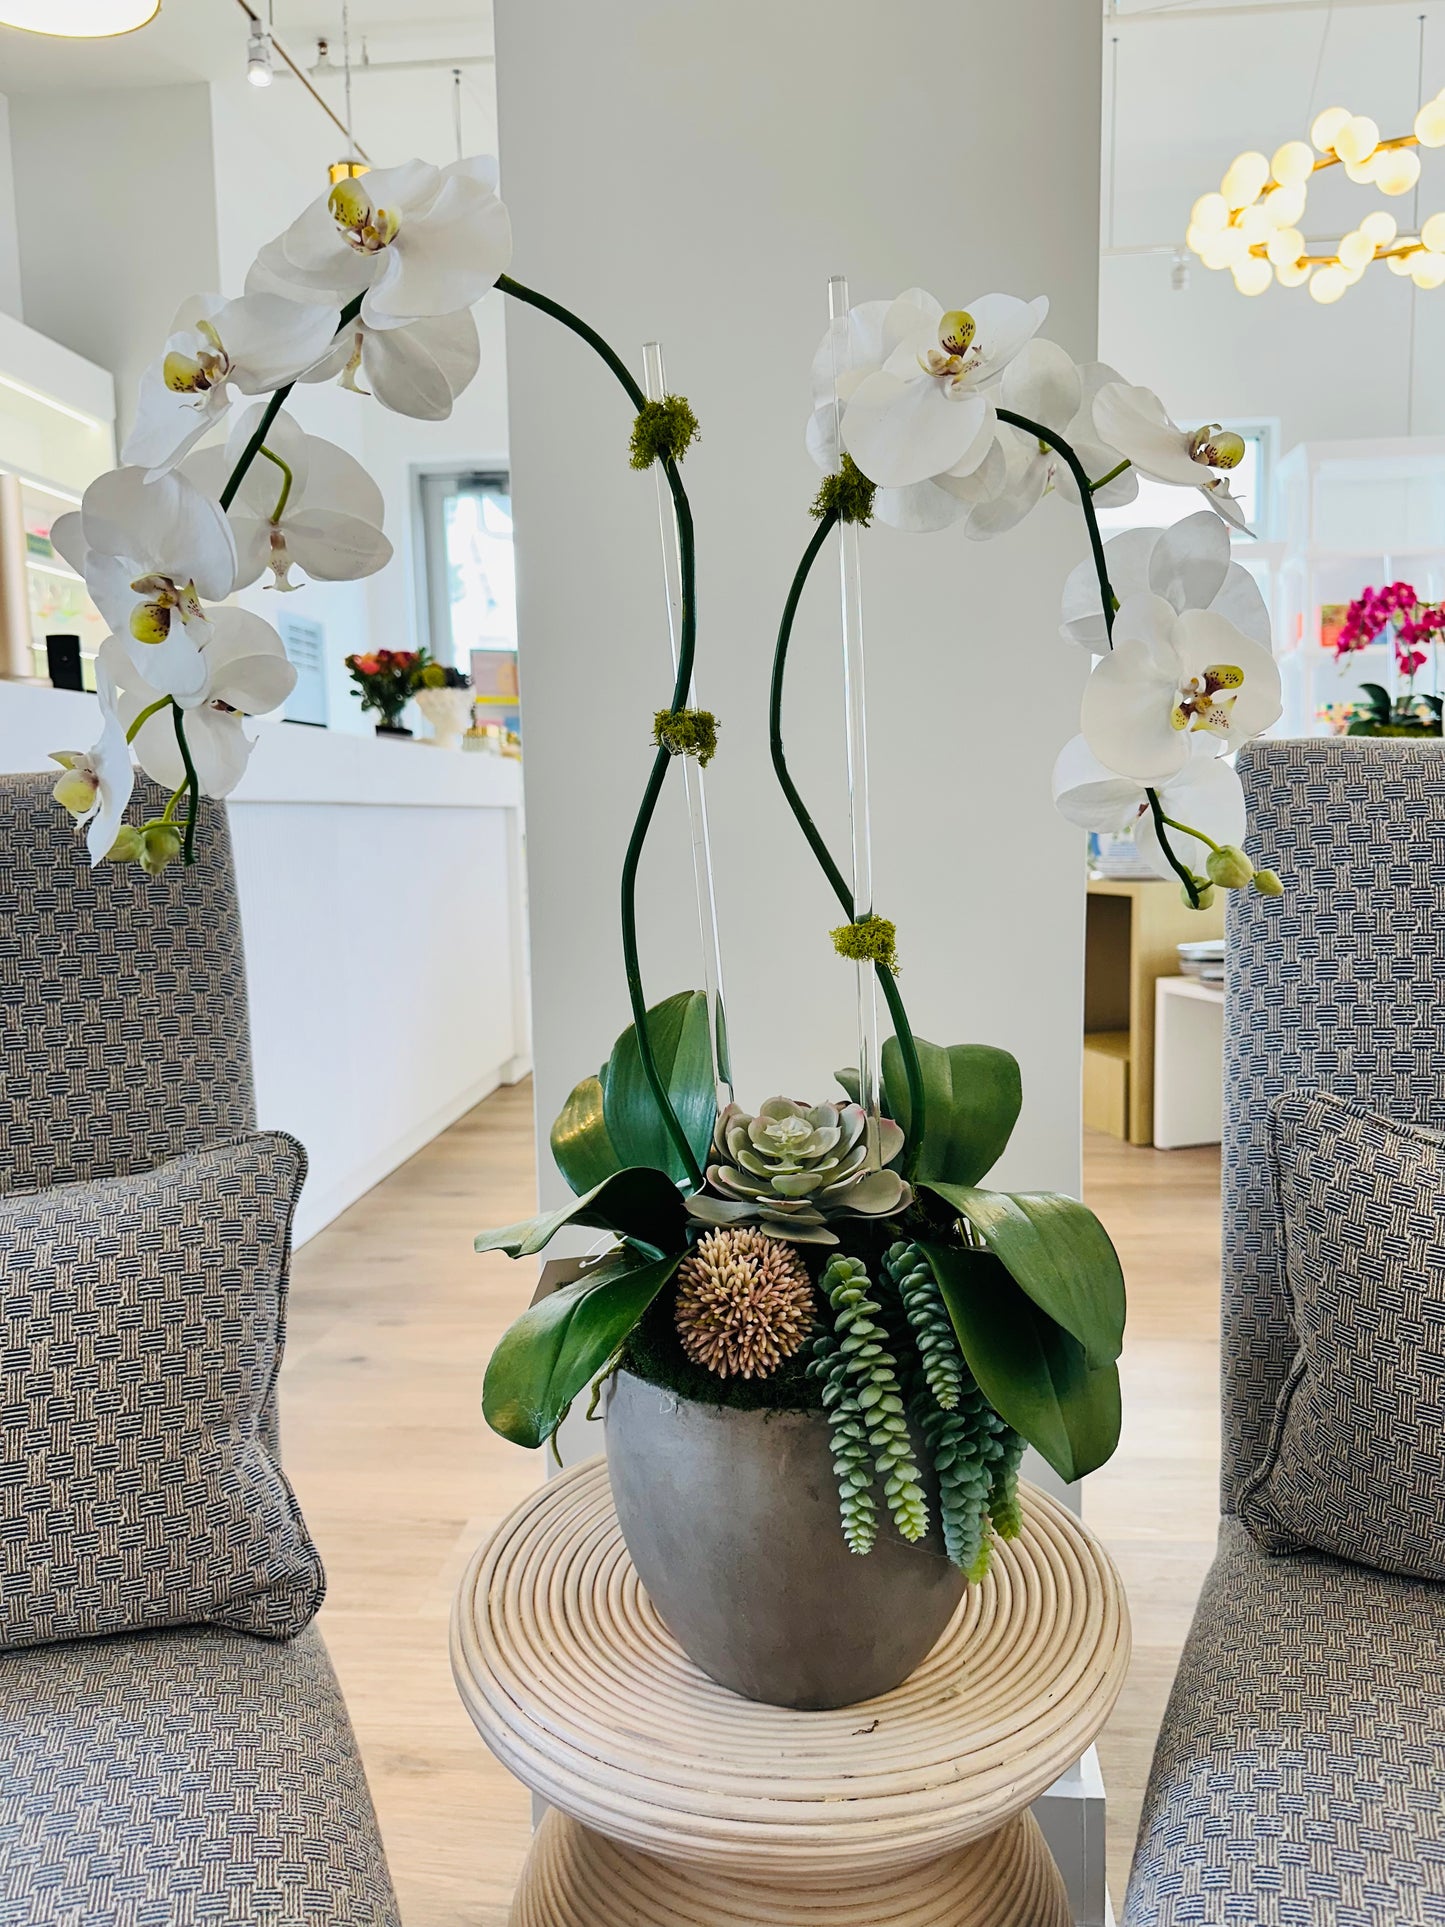 Double orchid with succulents - Concrete bowl